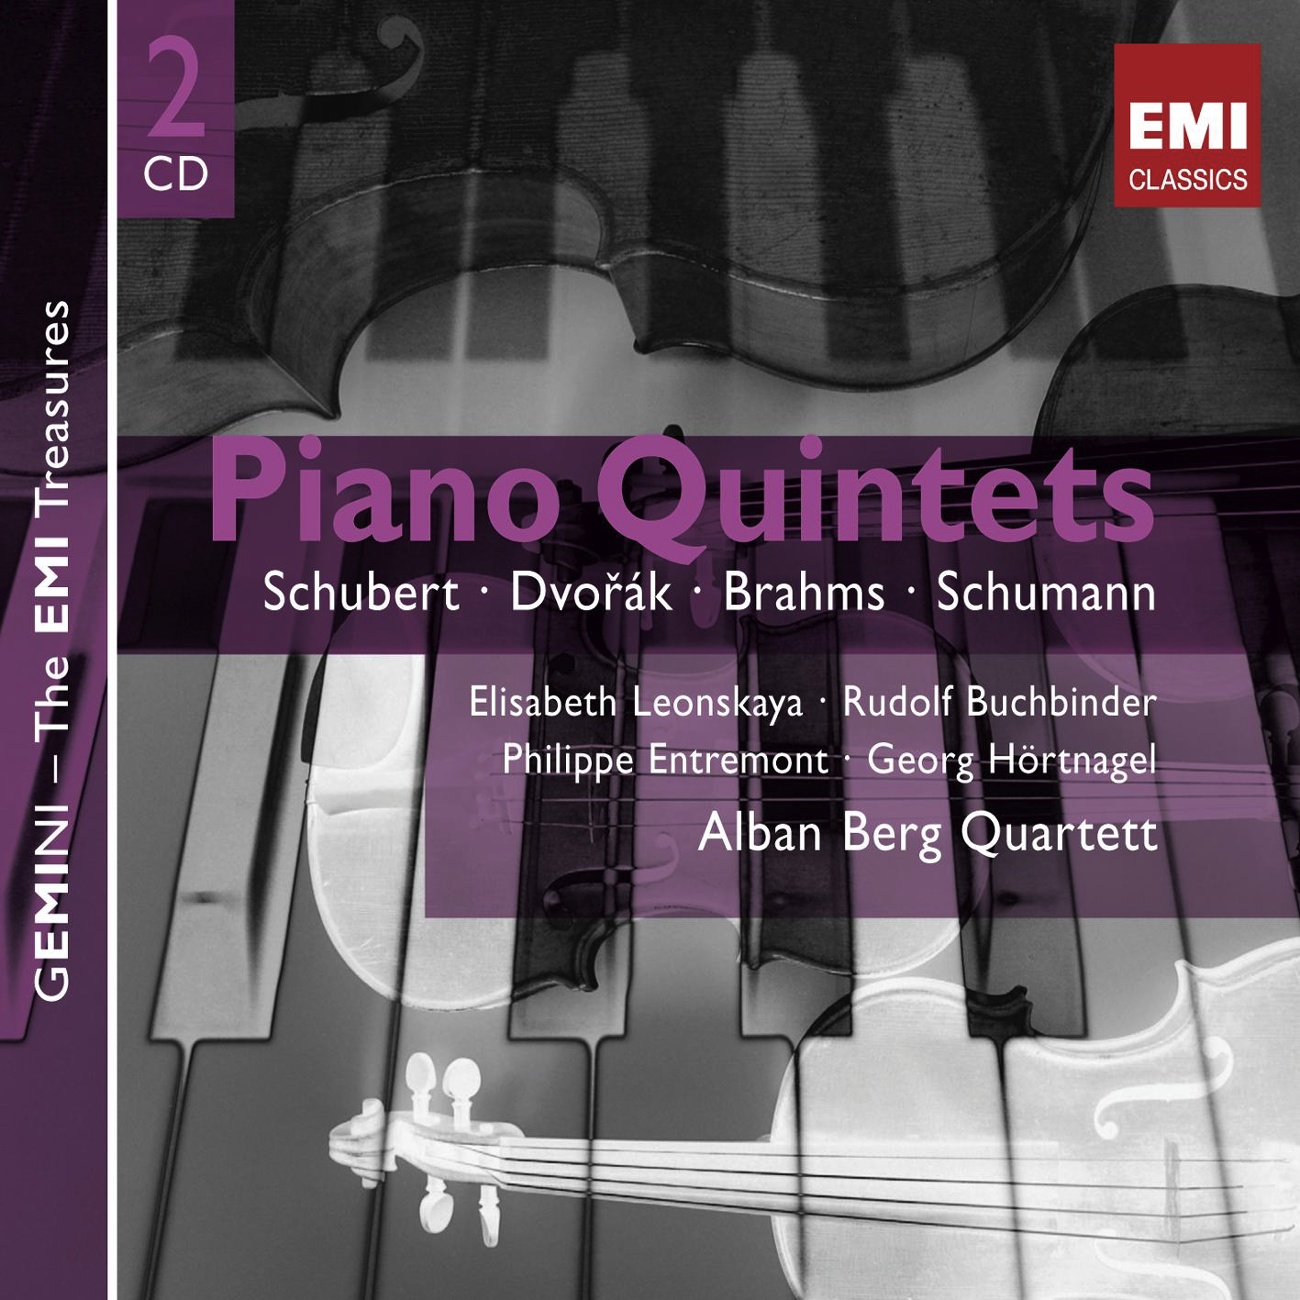 Piano Quintet in A Major, B.155 (Op. 81): I. Allegro ma non tanto